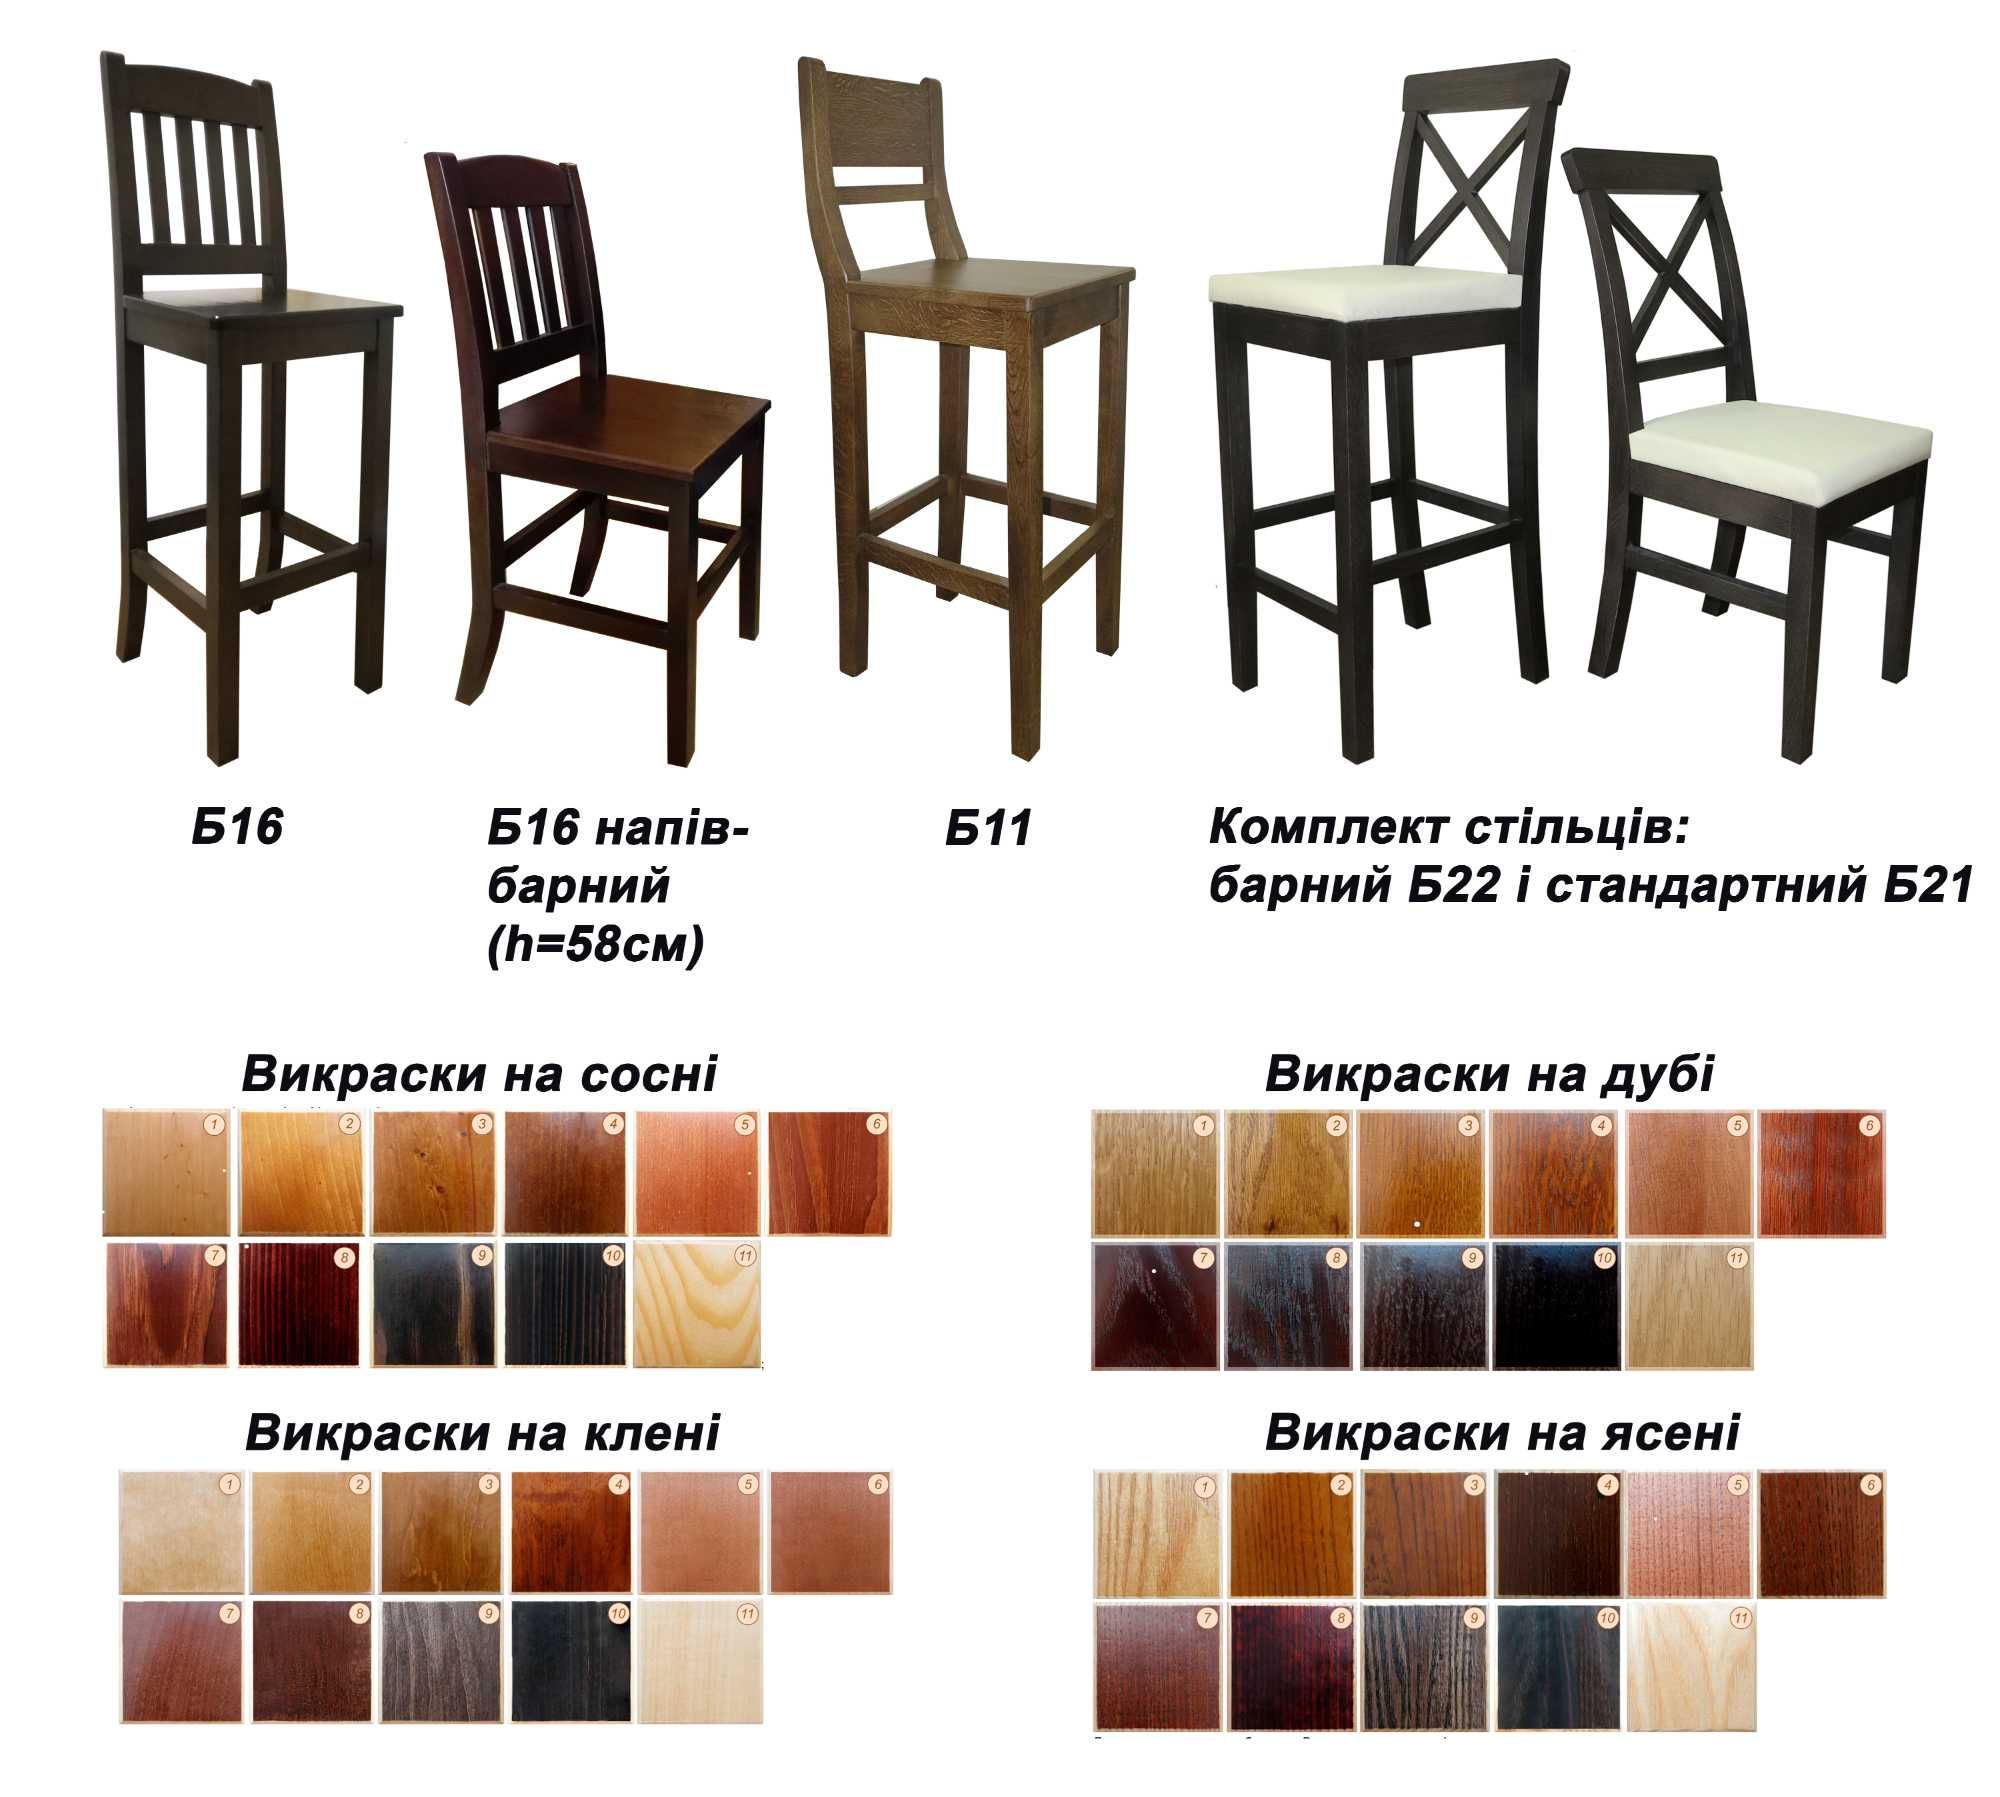 Меблі дерев'янні під замовлення столи, стільці для ресторанів і дому